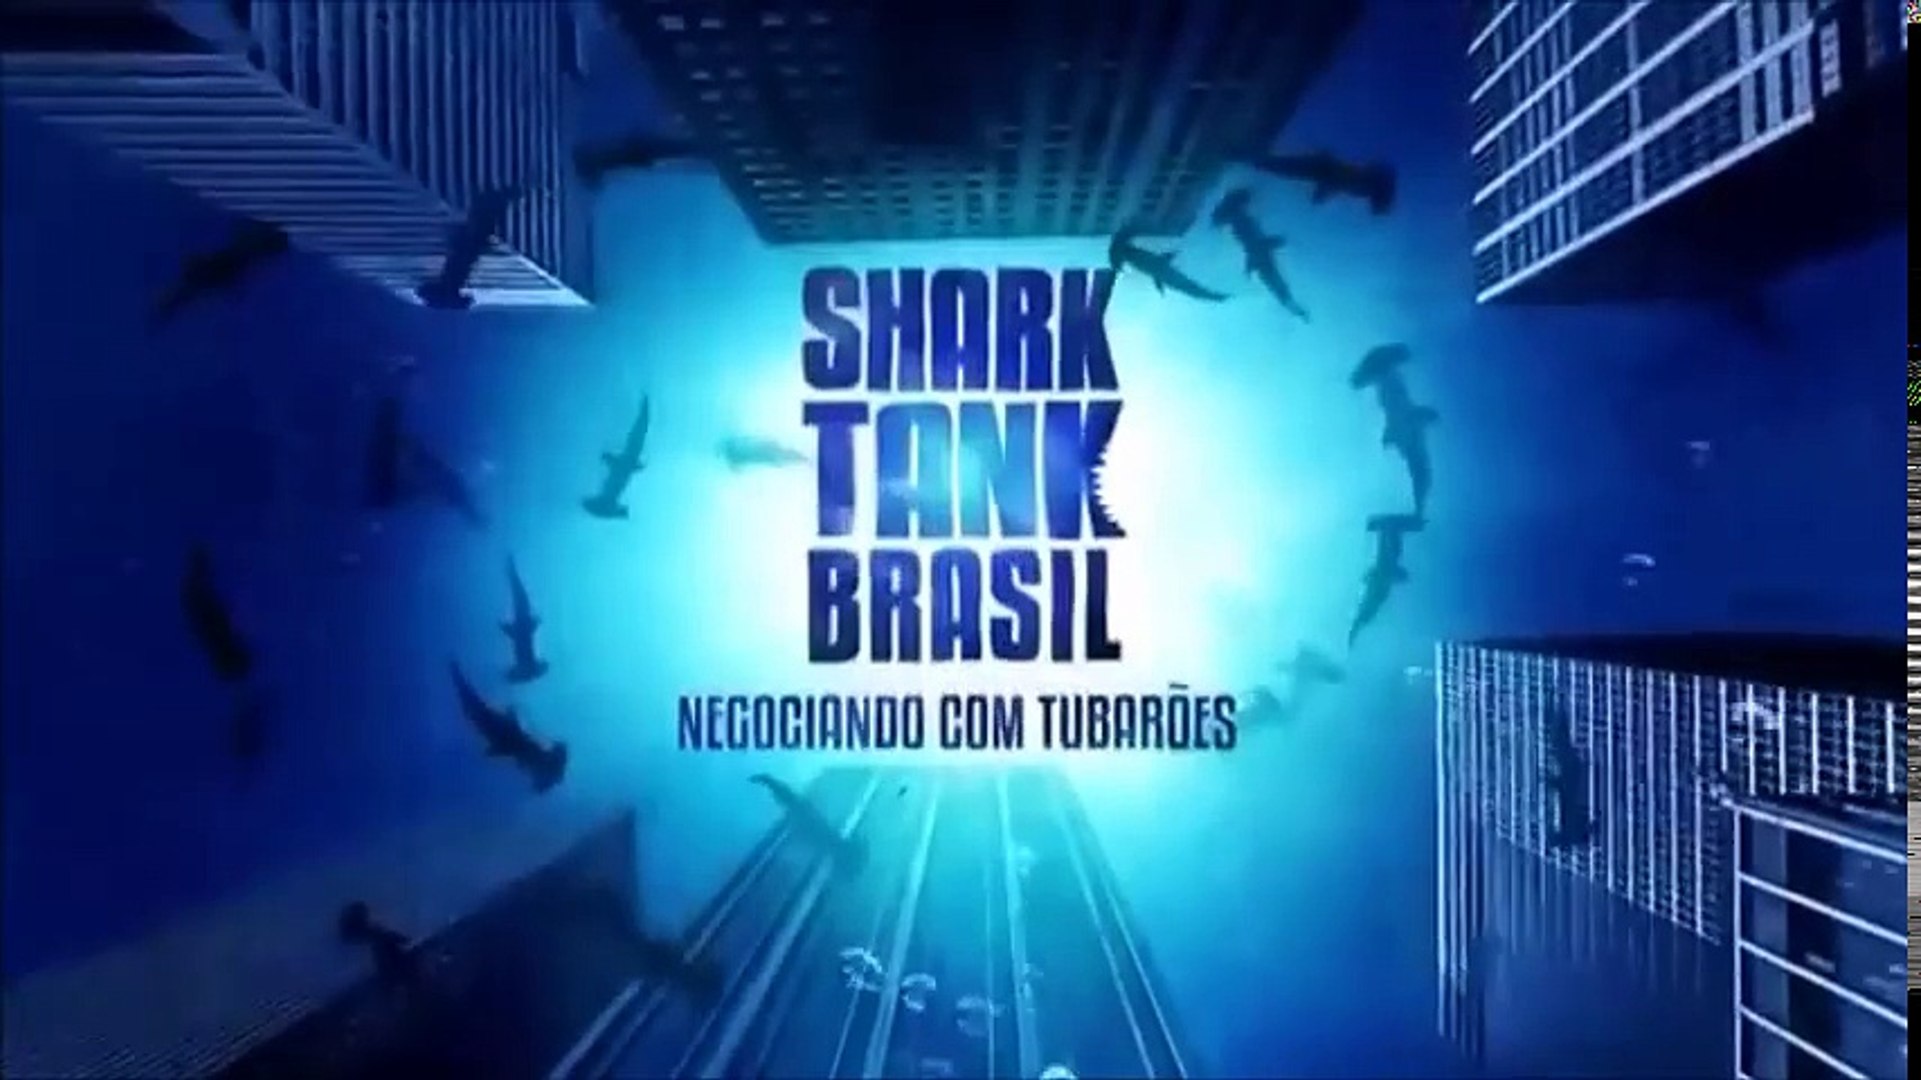 Shark Tank Brasil: Negociando com Tubarões Temporada 2 - streaming